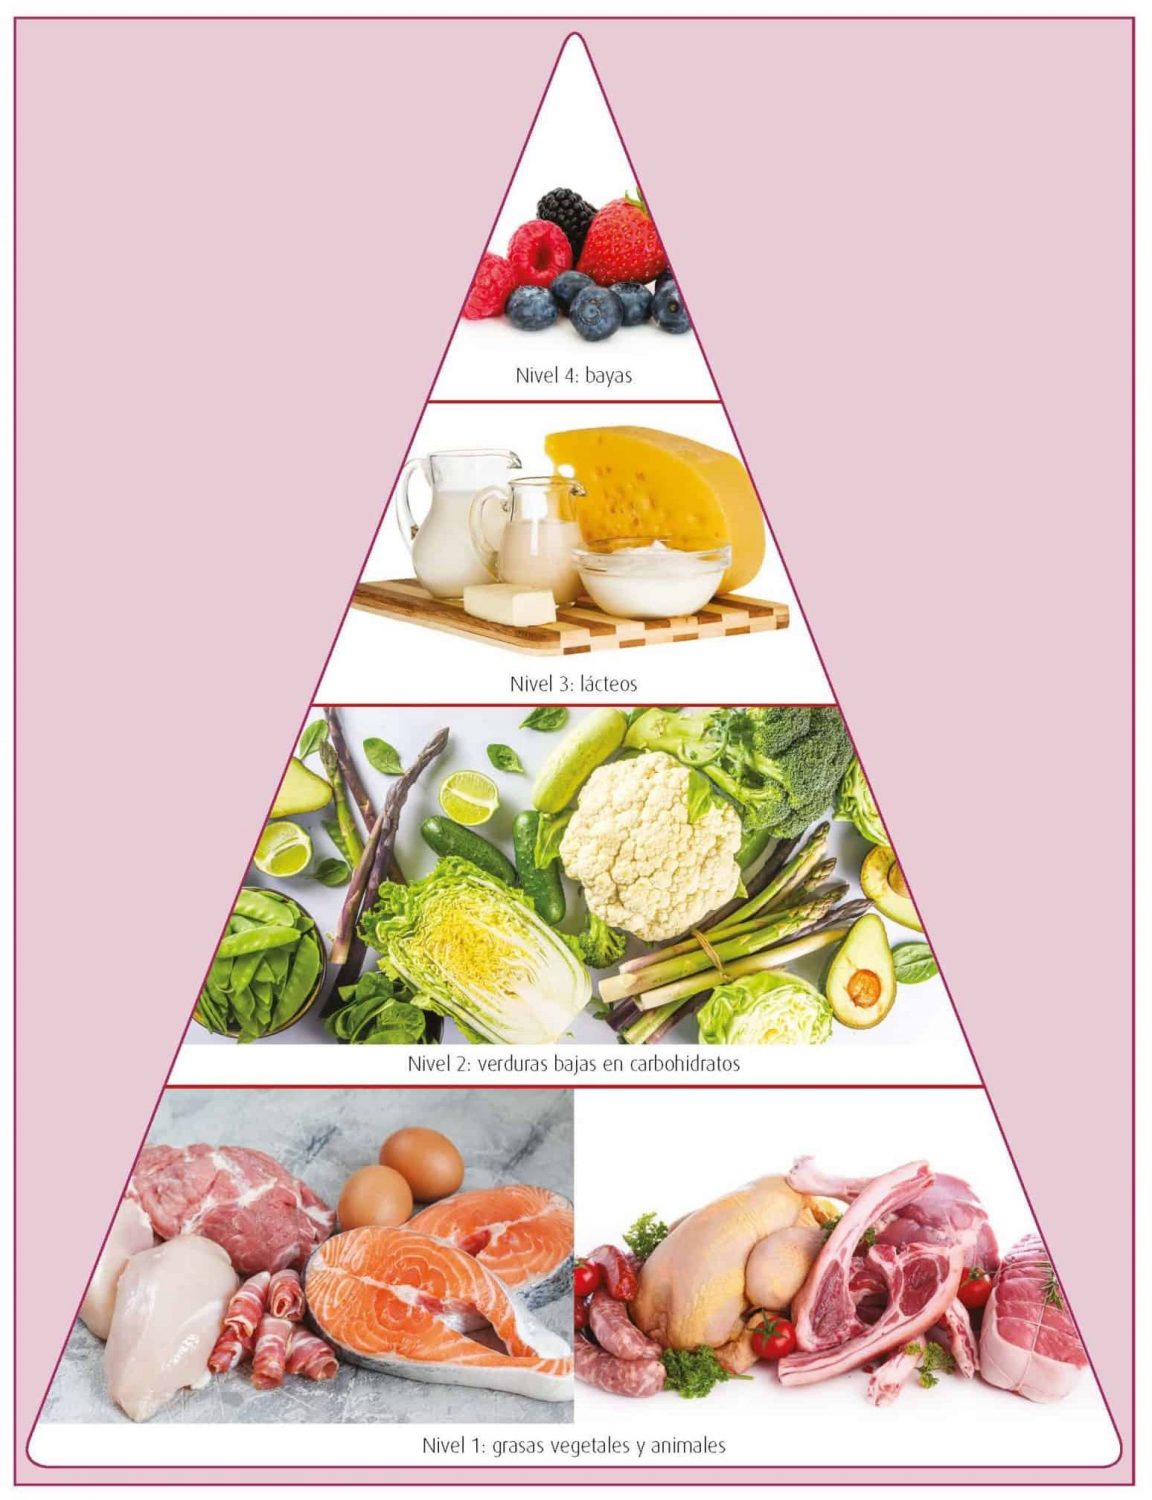 Imagen: La Pirámide keto está conformada por 4 niveles: Carnes de origen animal y grasas vegetales; Verduras bajas en carbohidratos, Quesos y lácteos; y Bayas.